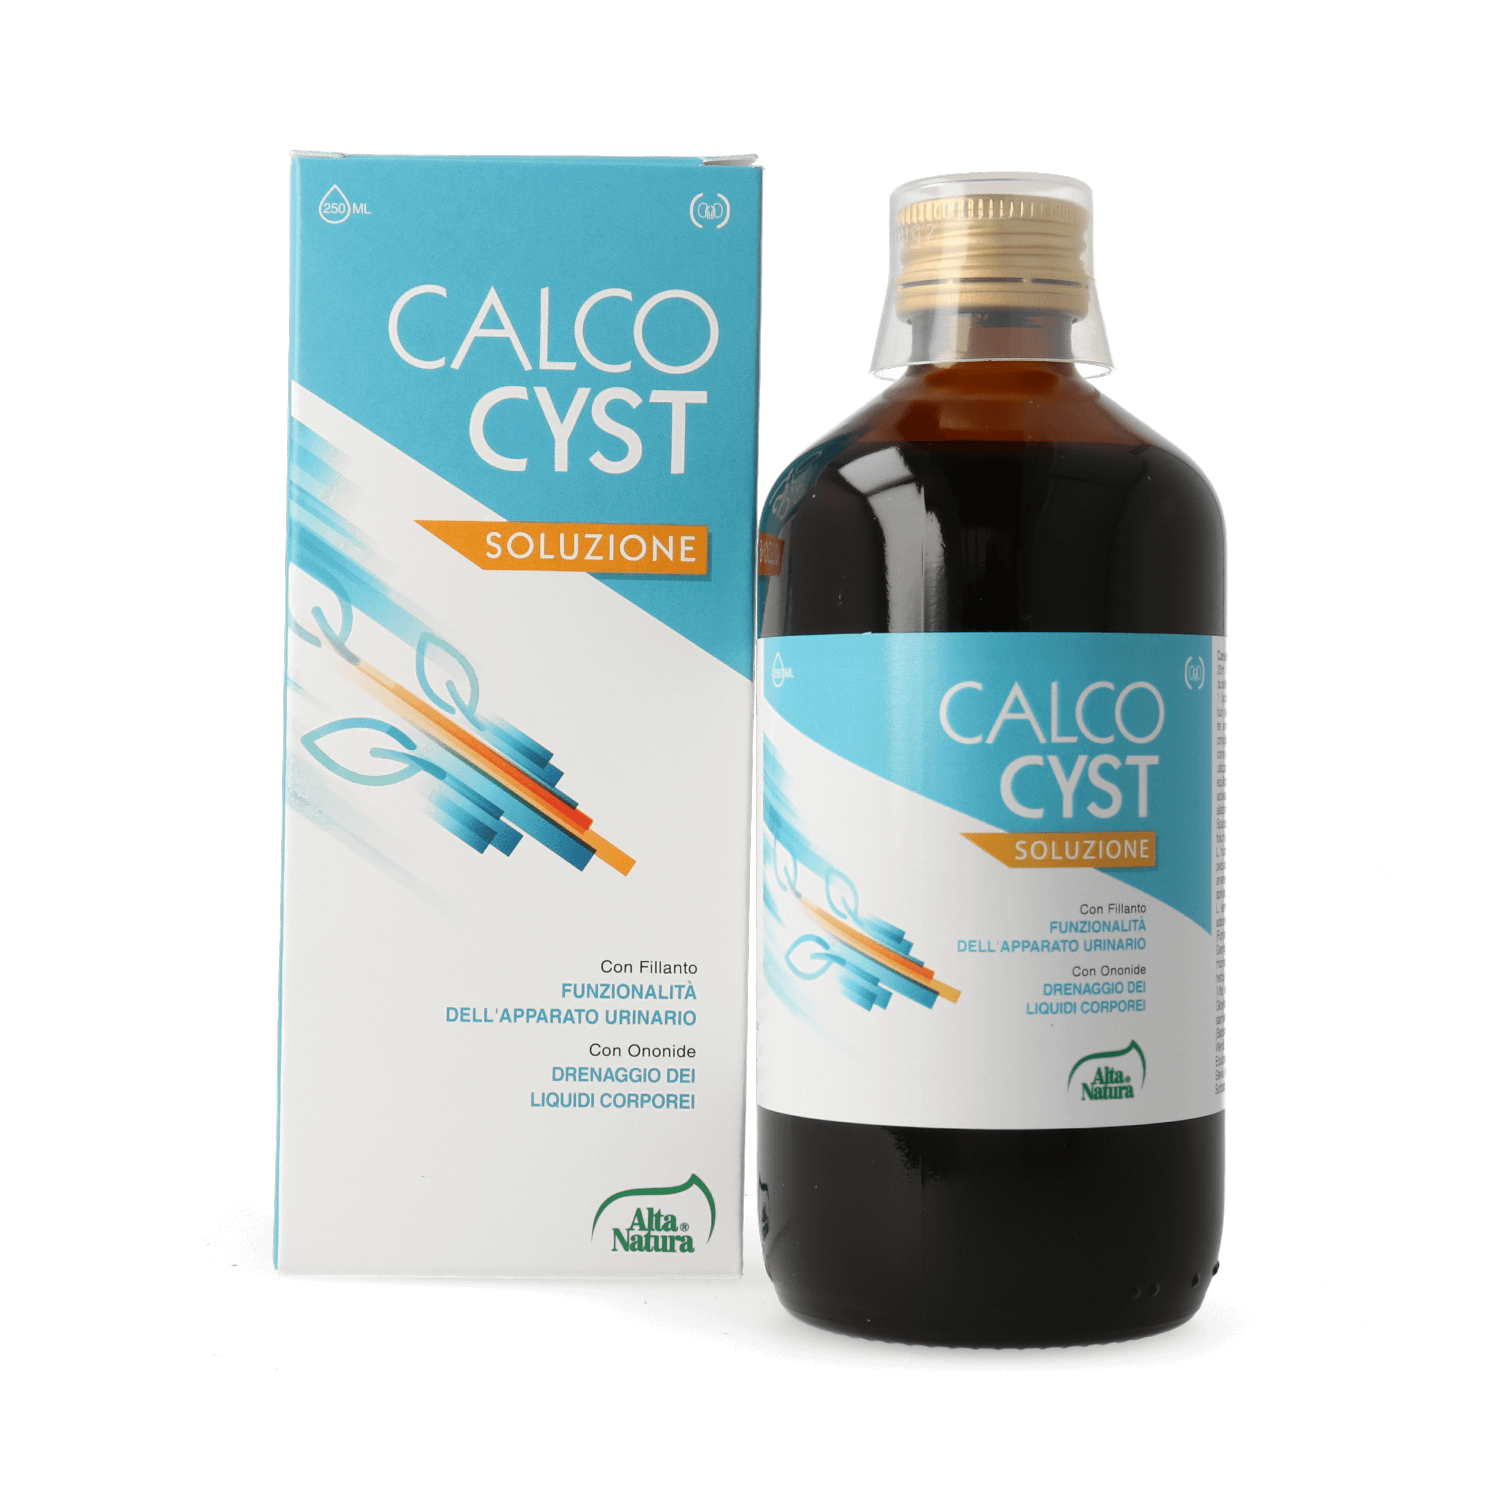 Calcocyst soluzione